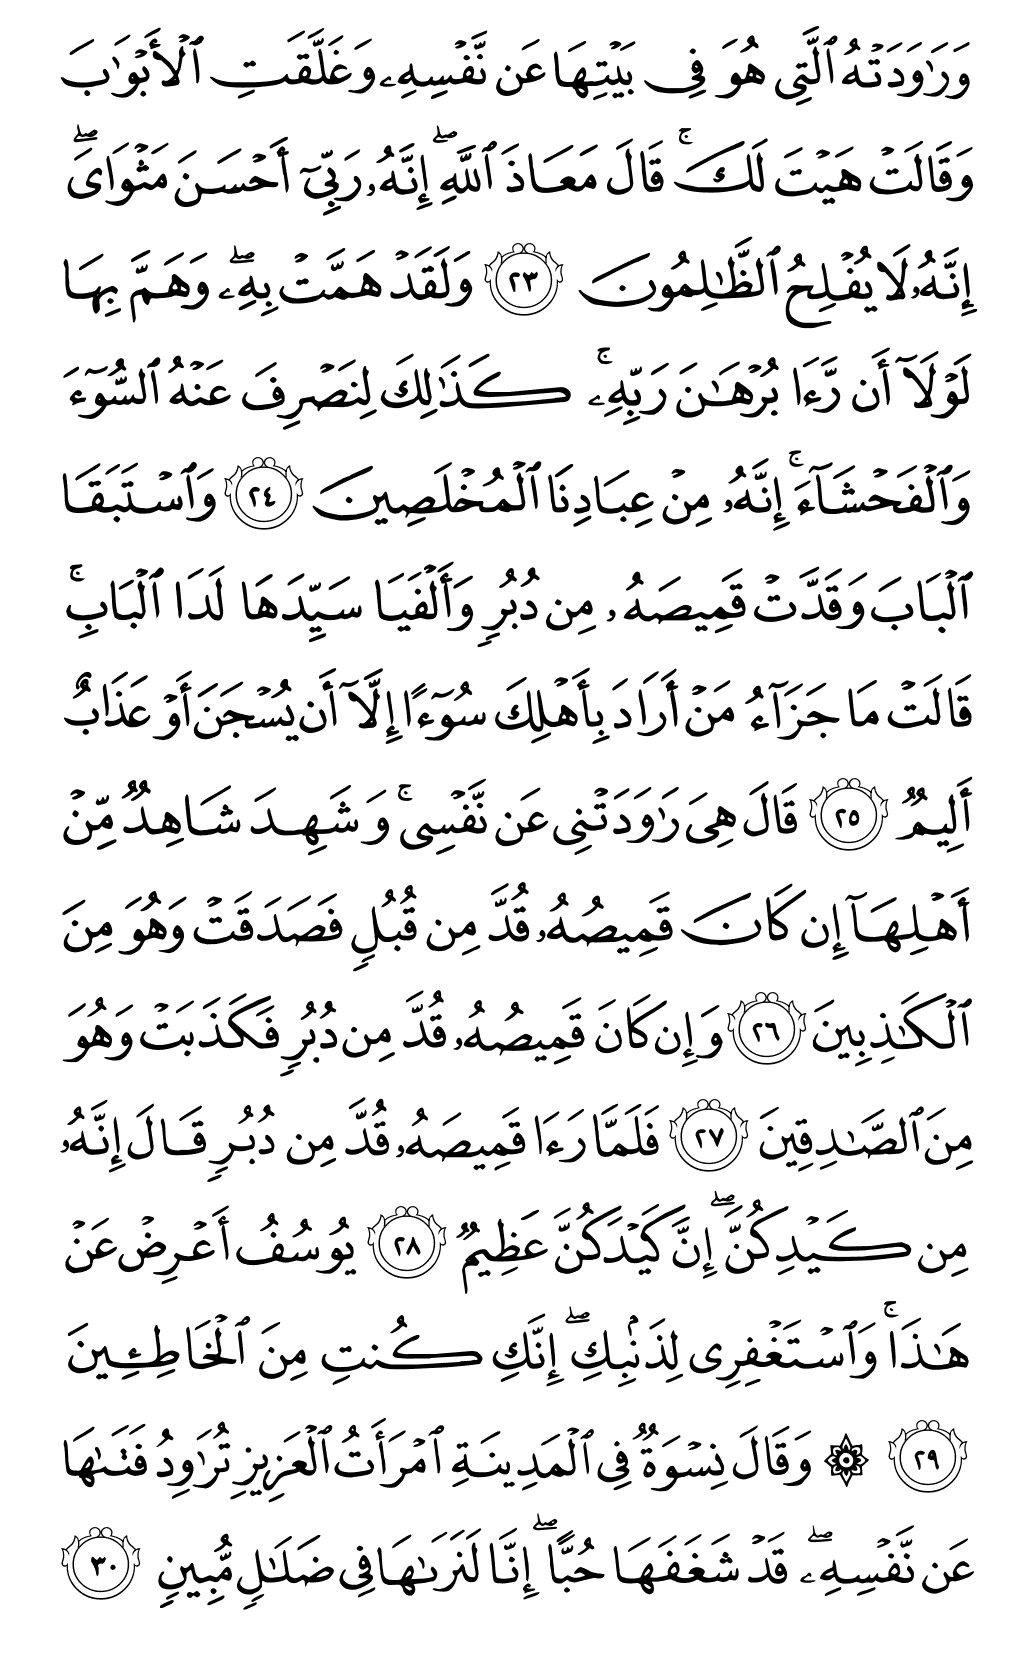 الصفحة رقم 238 من القرآن الكريم